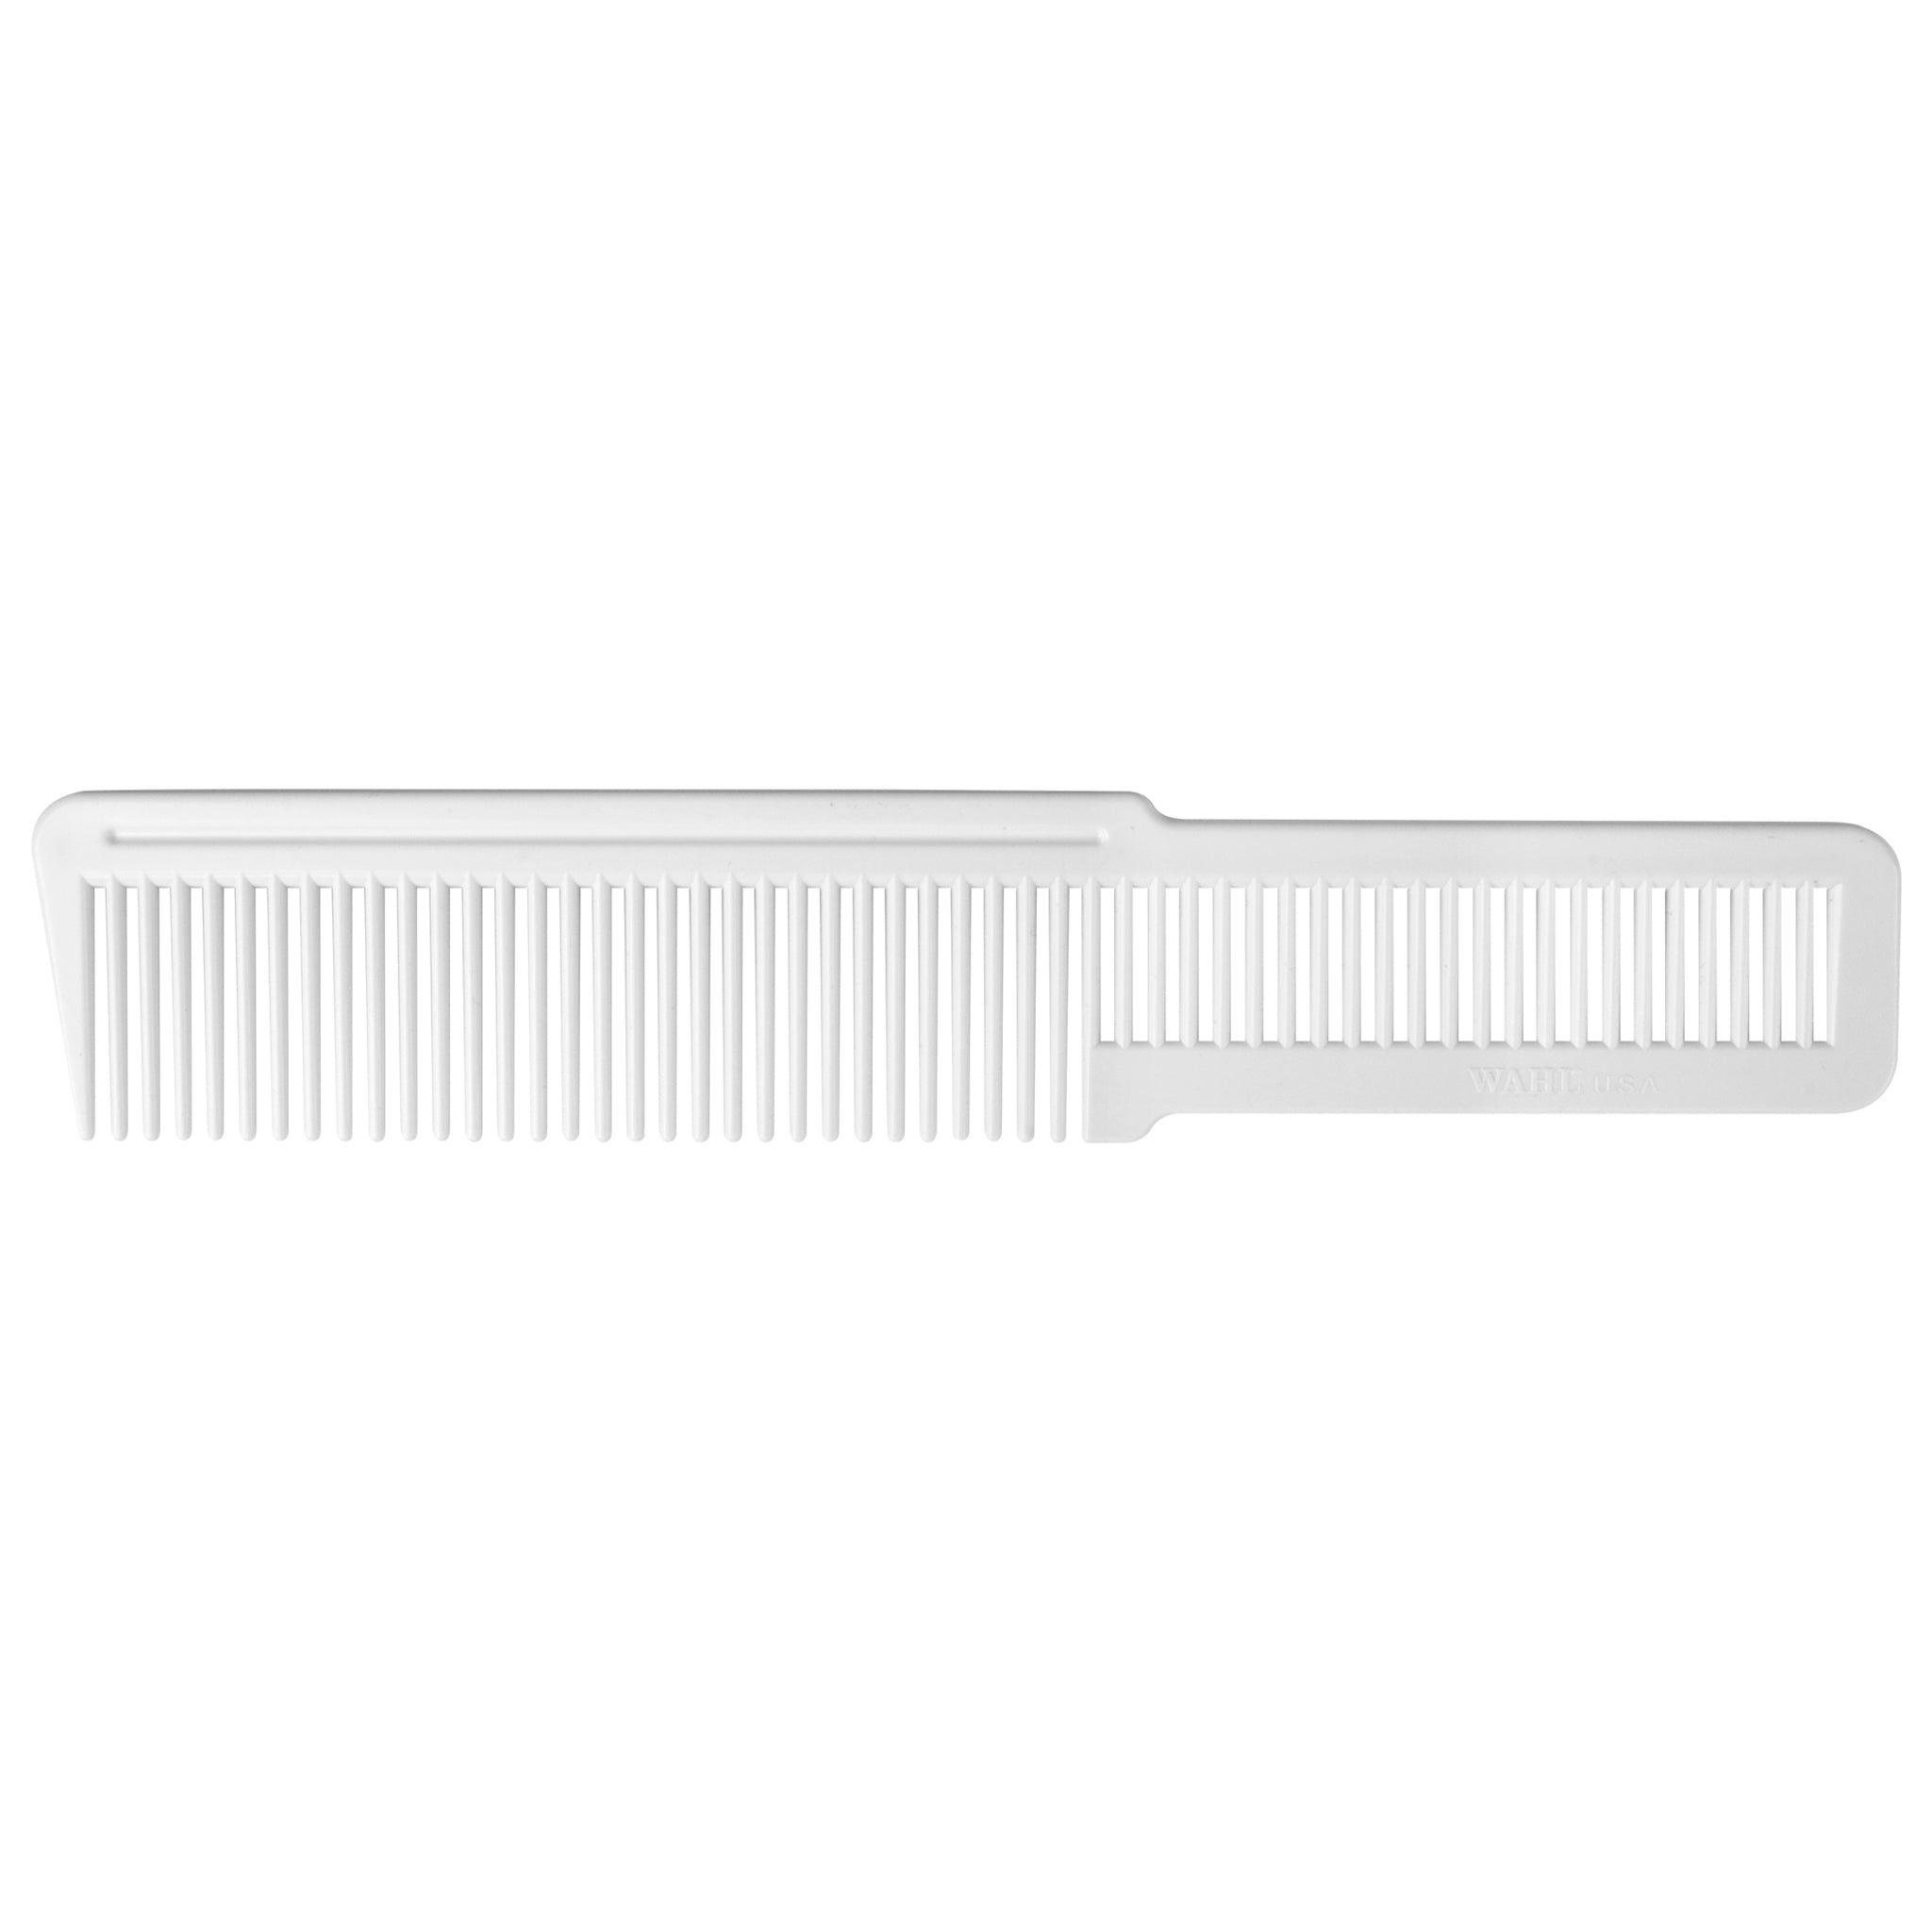 Wahl Clipper Comb - White